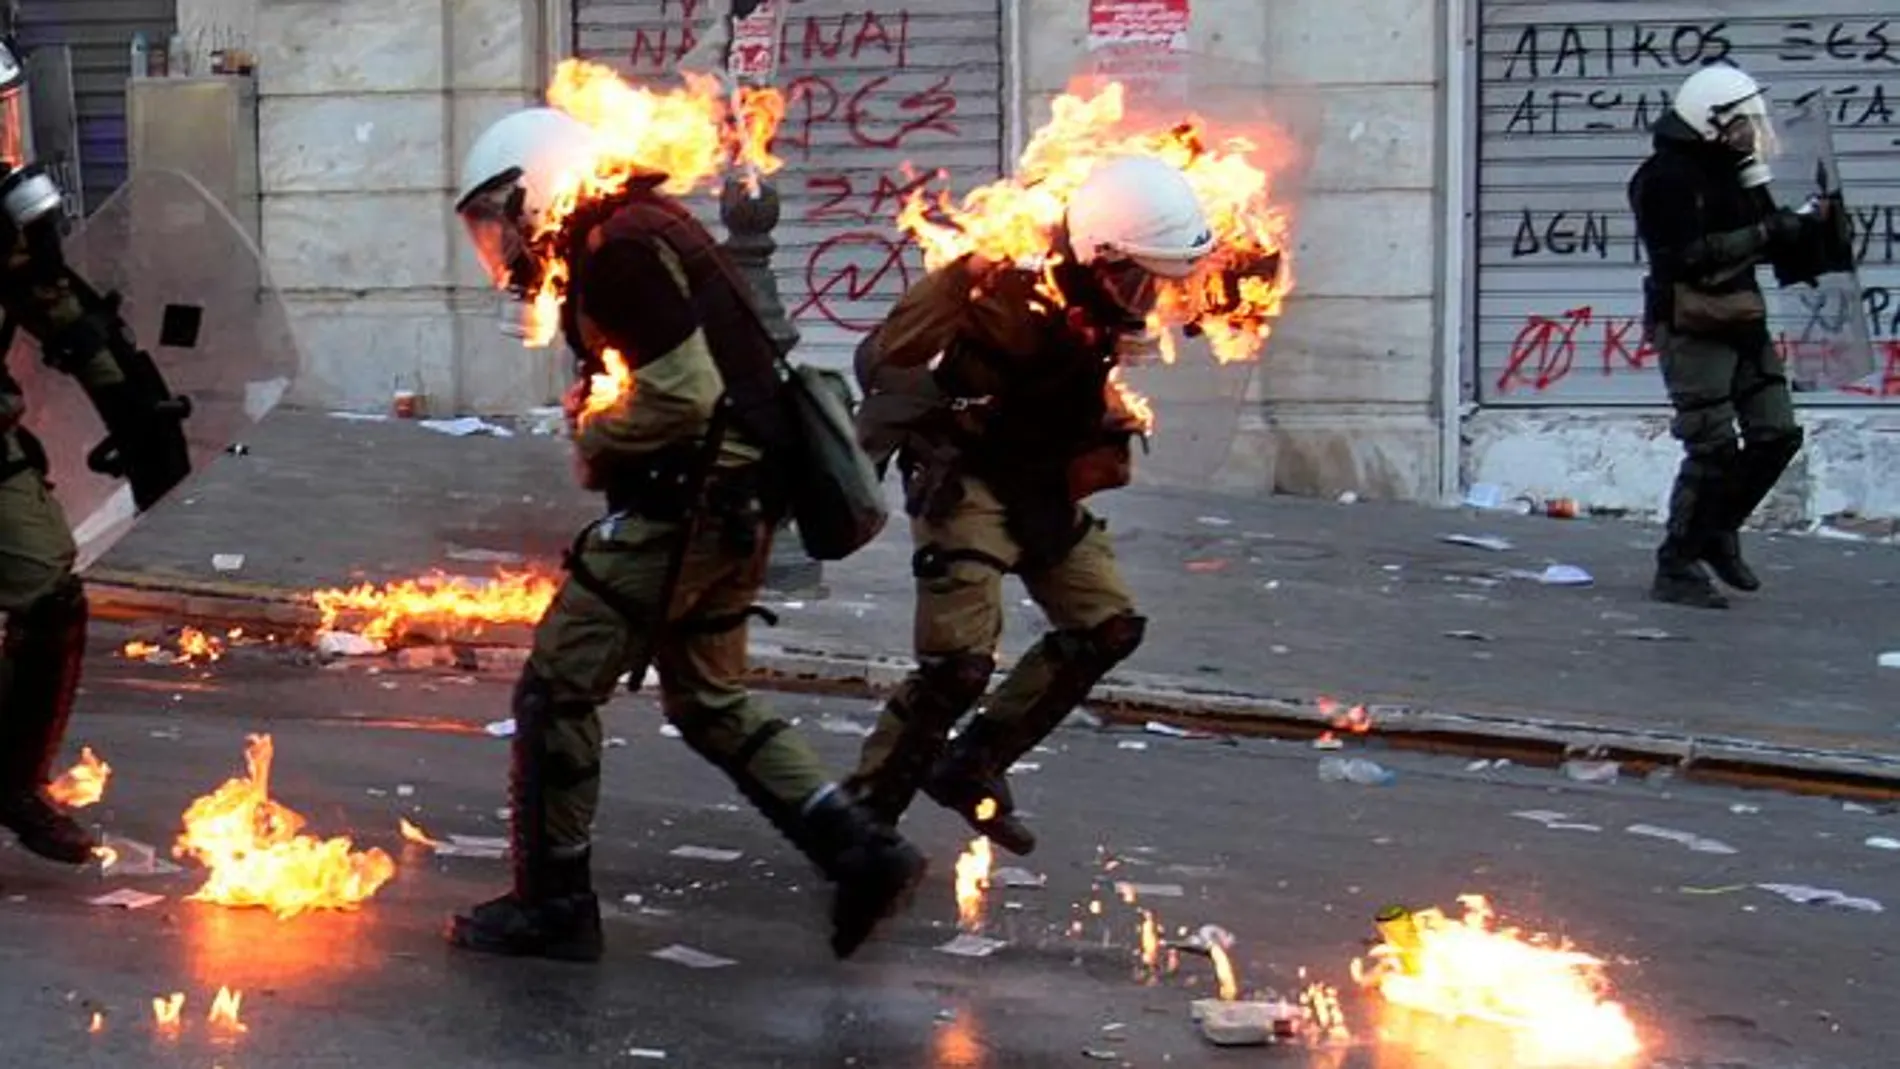 Imagende archivo de la huelga en Grecia el pasado 20 de octubre